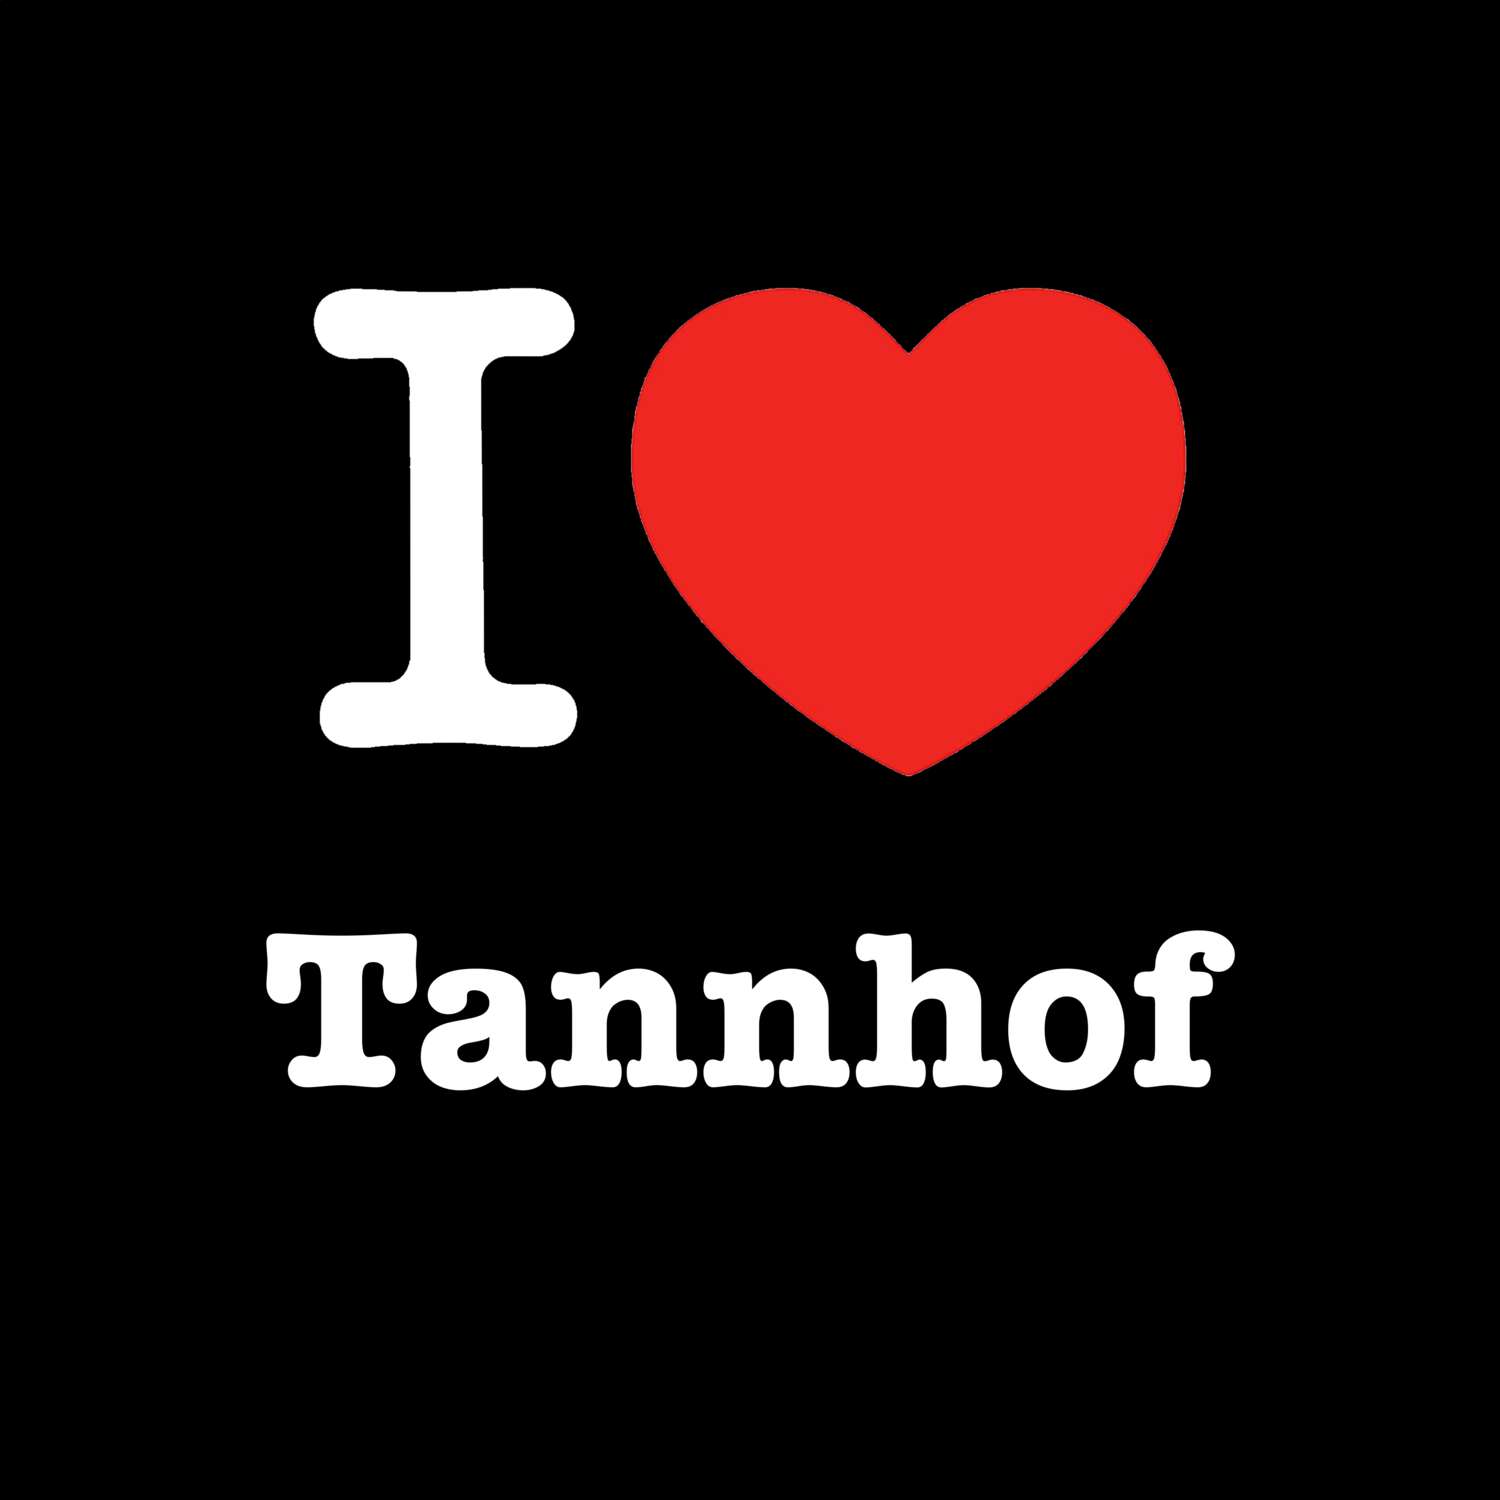 Tannhof T-Shirt »I love«